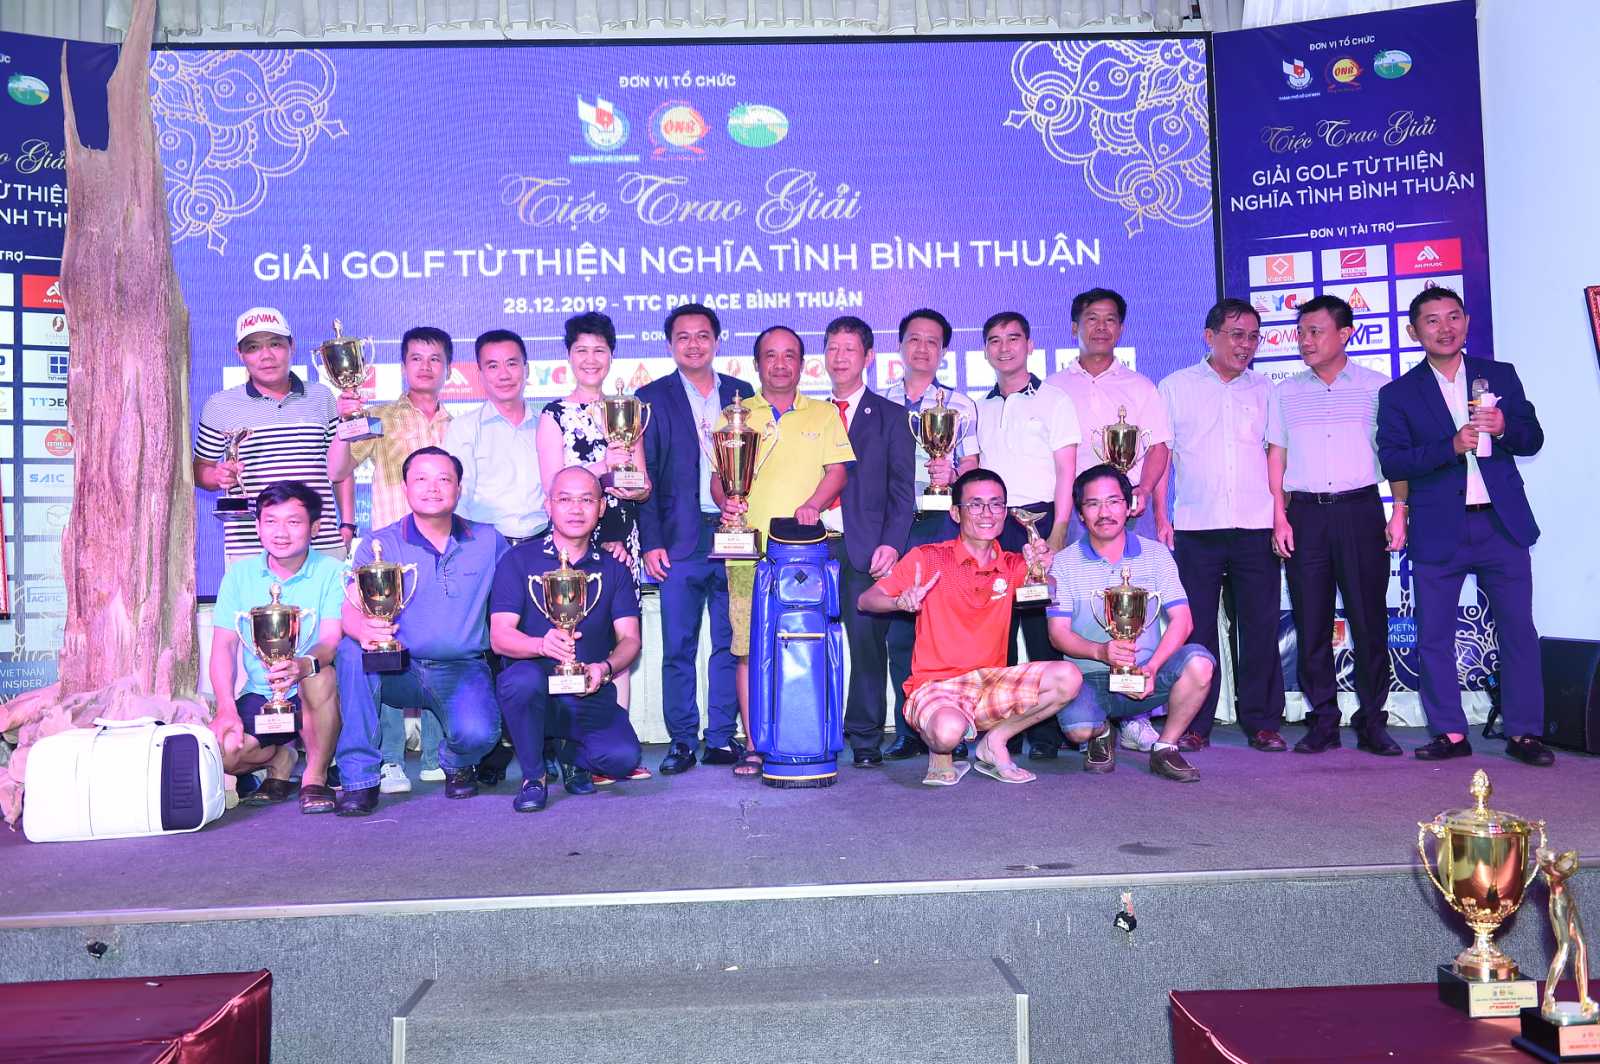 Vinh quang gọi tên golfer Phạm Minh Hồng tại Giải golf Từ thiện Nghĩa tình Bình Thuận